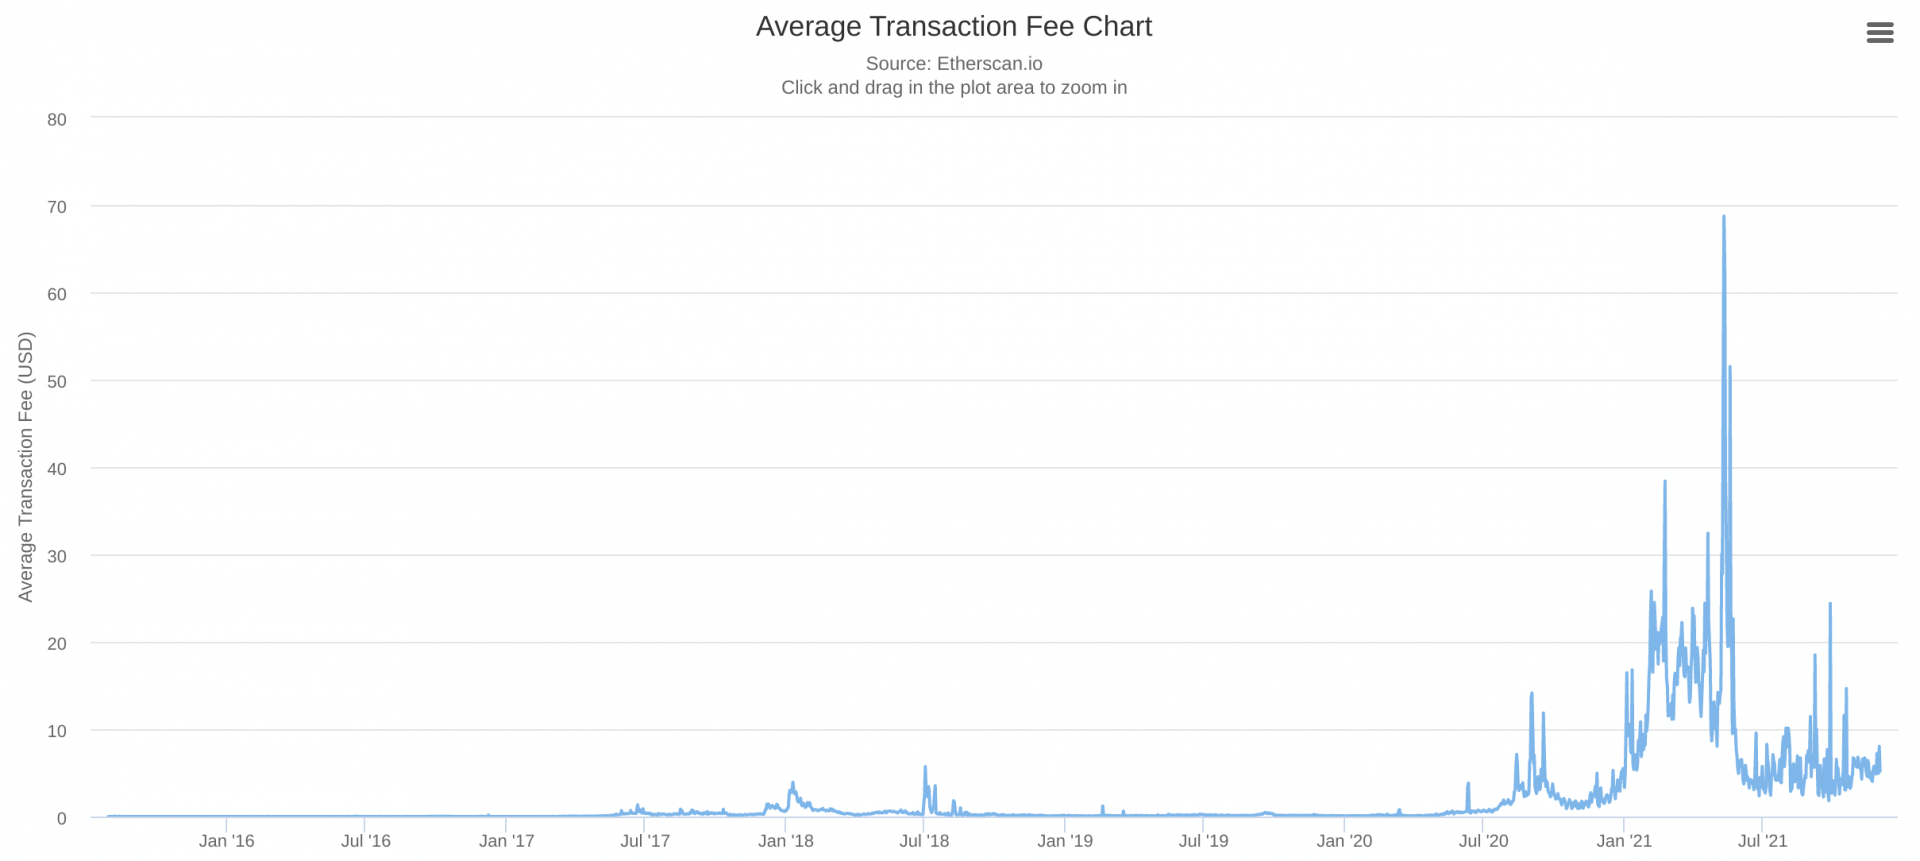 Les frais de transaction sur Ethereum ont atteint des niveaux records, avec une moyenne de 62 dollars par transaction en mai 2021.